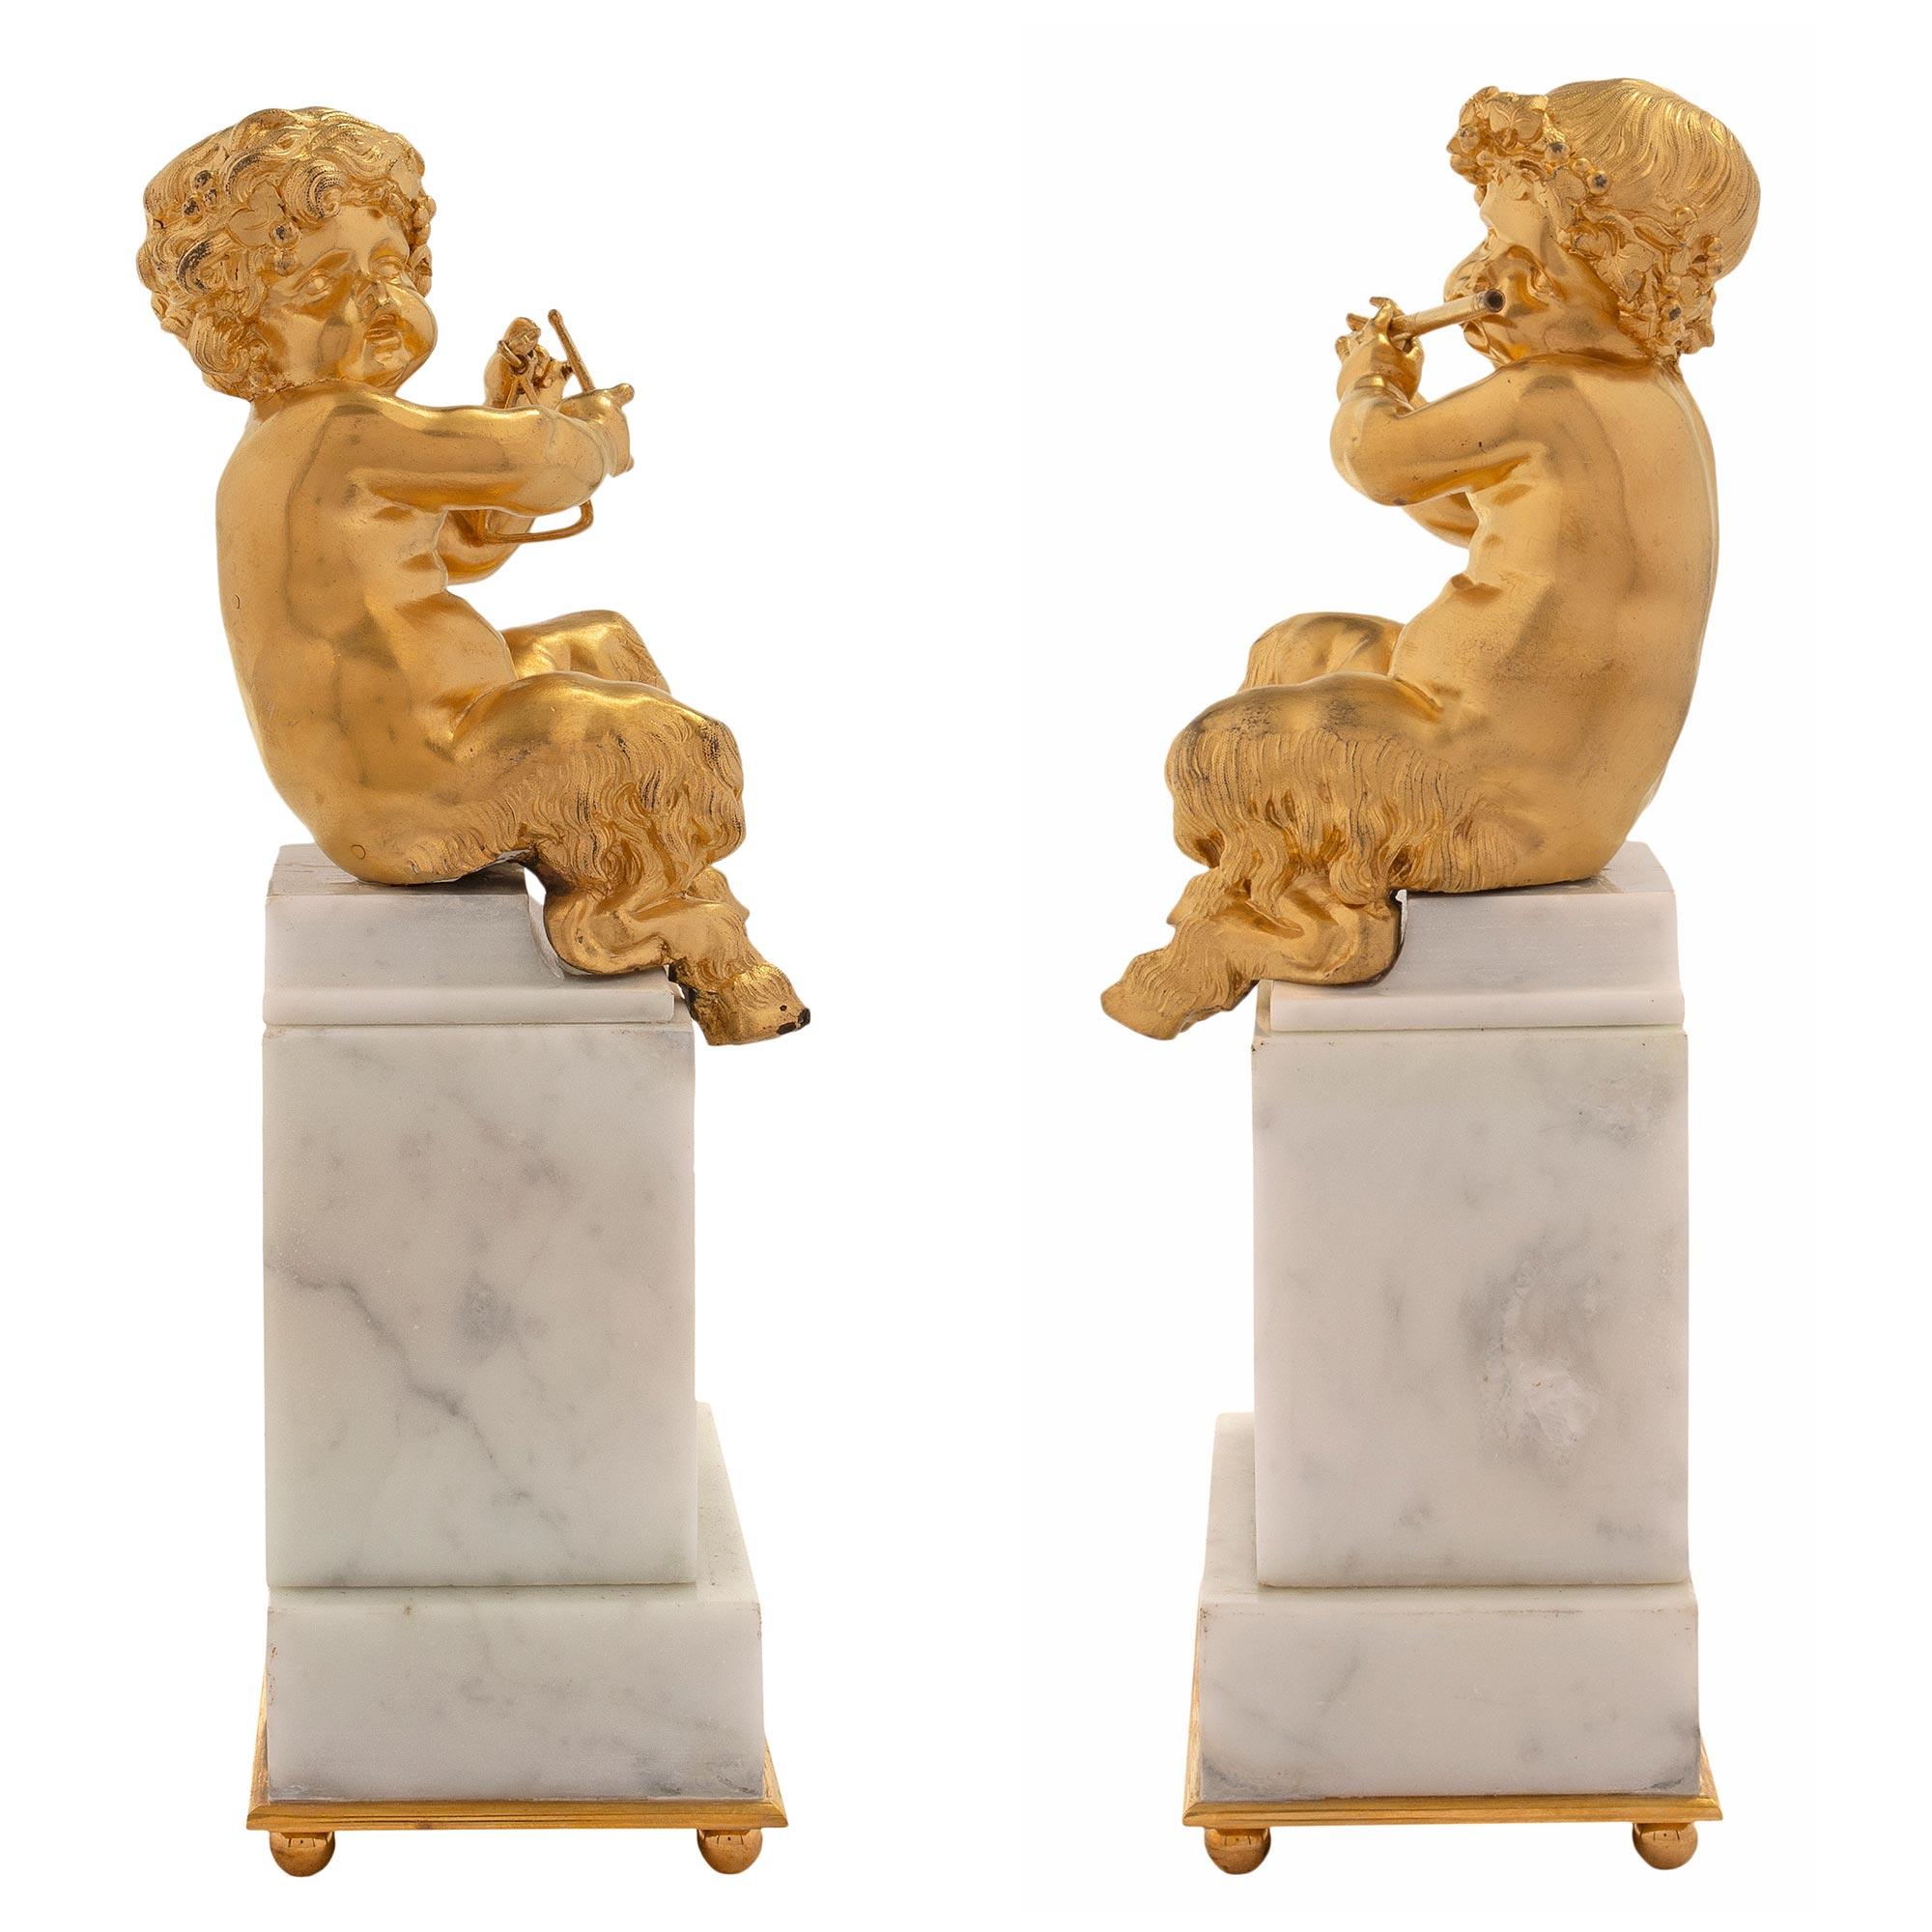 Ein absolut bezauberndes Paar französischer Statuen aus der Mitte des 19. Jahrhunderts aus Louis XVI-Ormolu und weißem Carrara-Marmor, die junge Putten darstellen. Das Paar steht auf einem rechteckigen Marmorsockel über einem Ormolu-Sockel mit